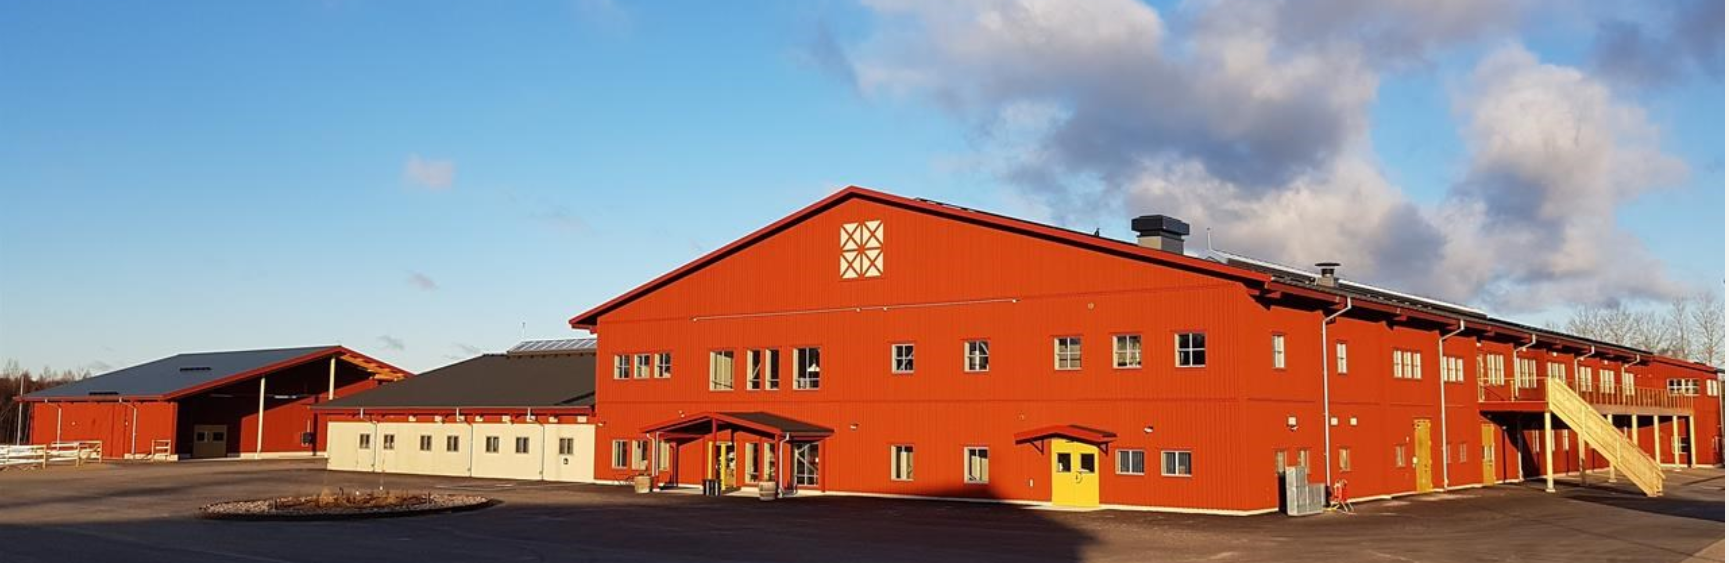 Nyköpings ridanläggning Nyäng